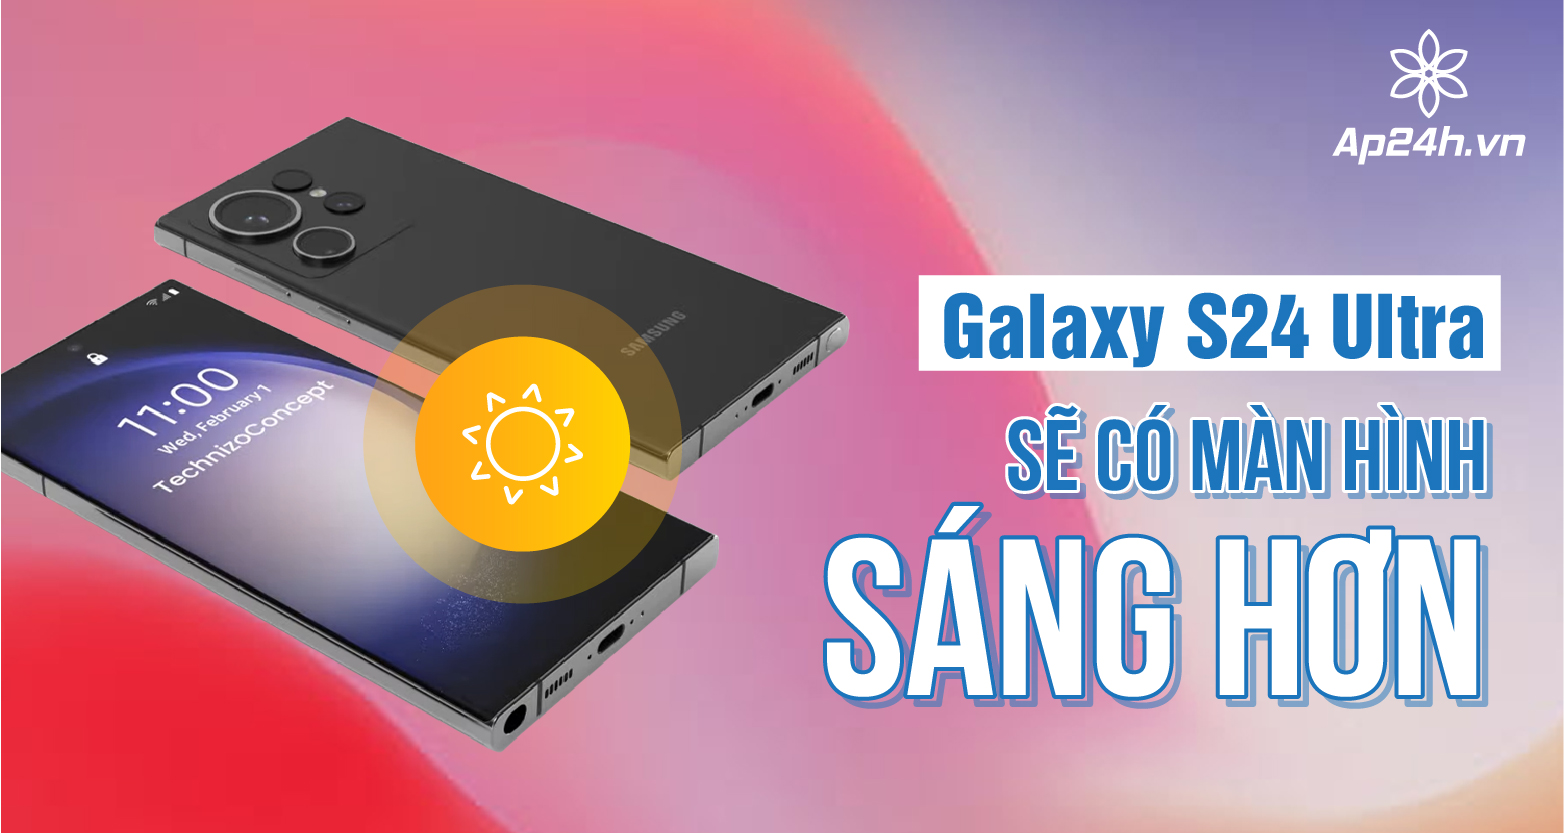  Galaxy S24 Ultra sẽ có màn hình sáng hơn